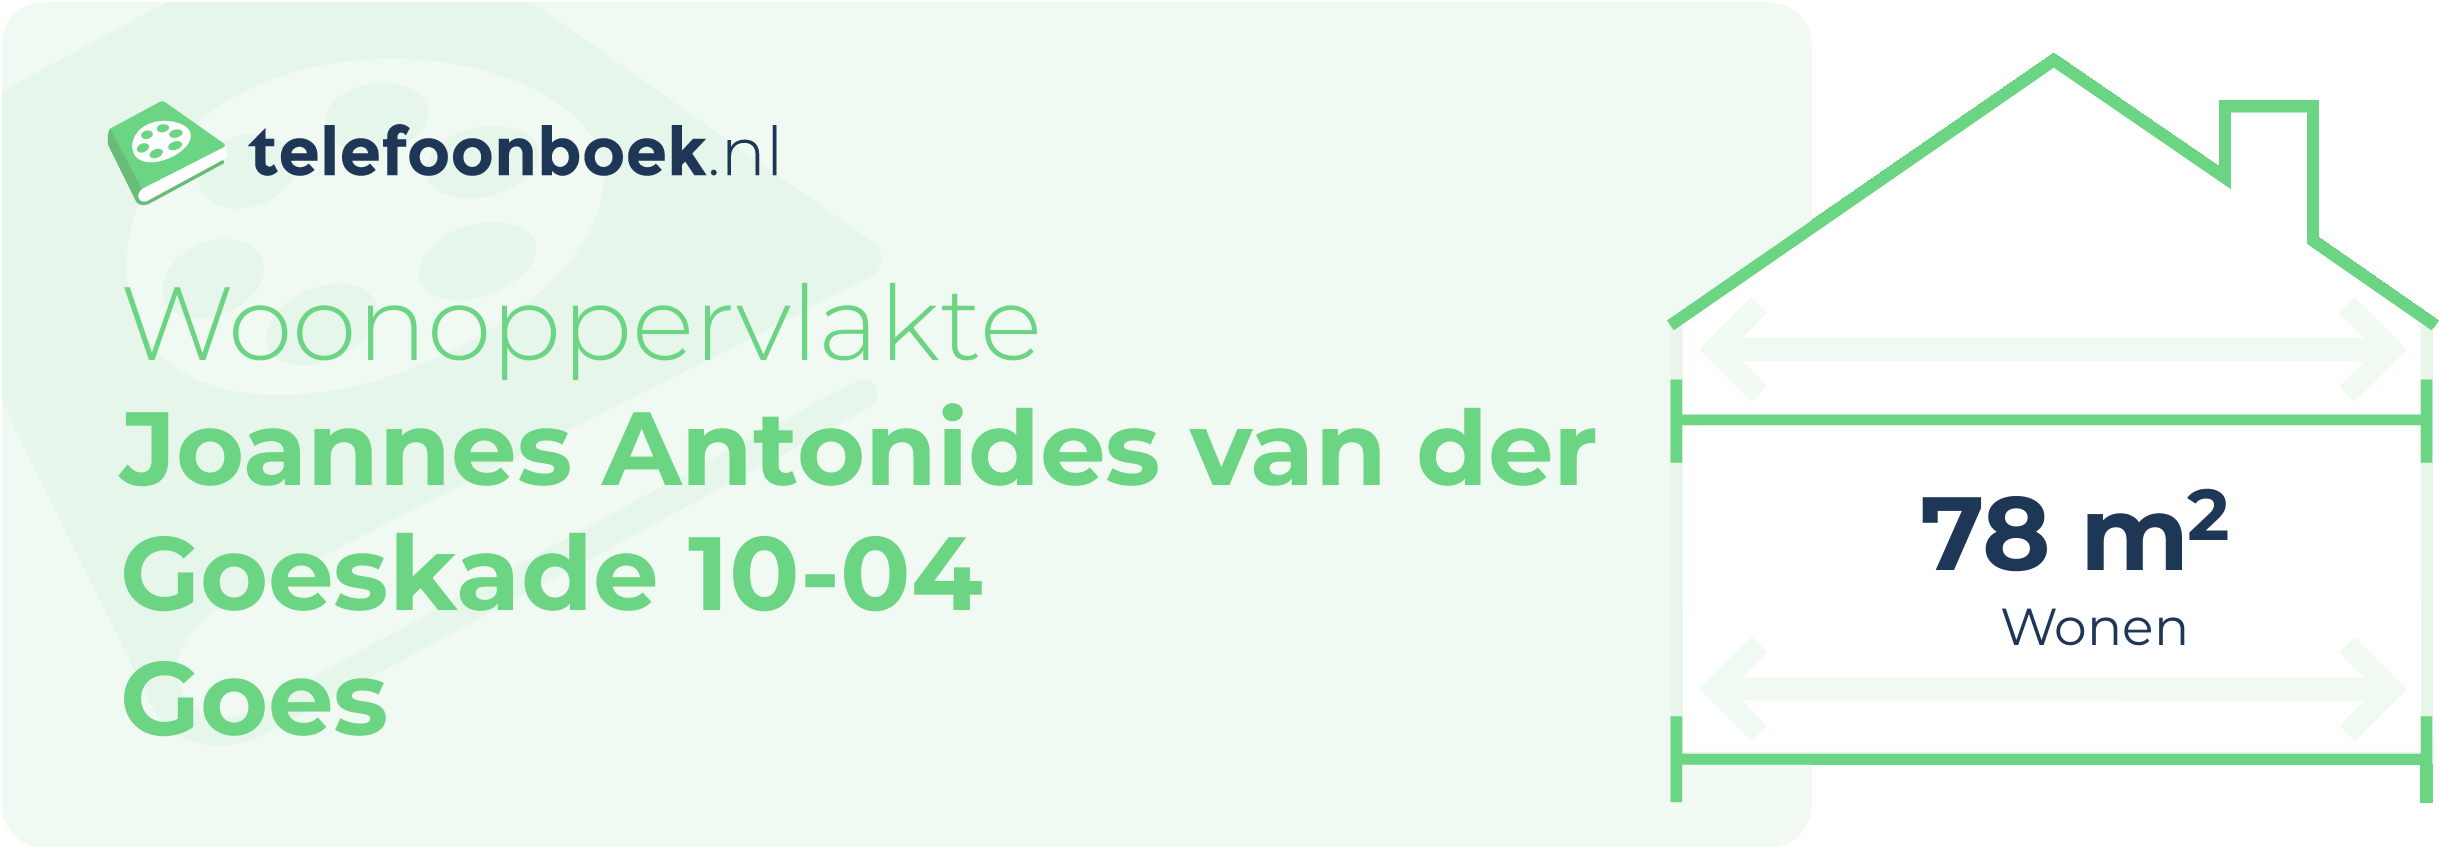 Woonoppervlakte Joannes Antonides Van Der Goeskade 10-04 Goes